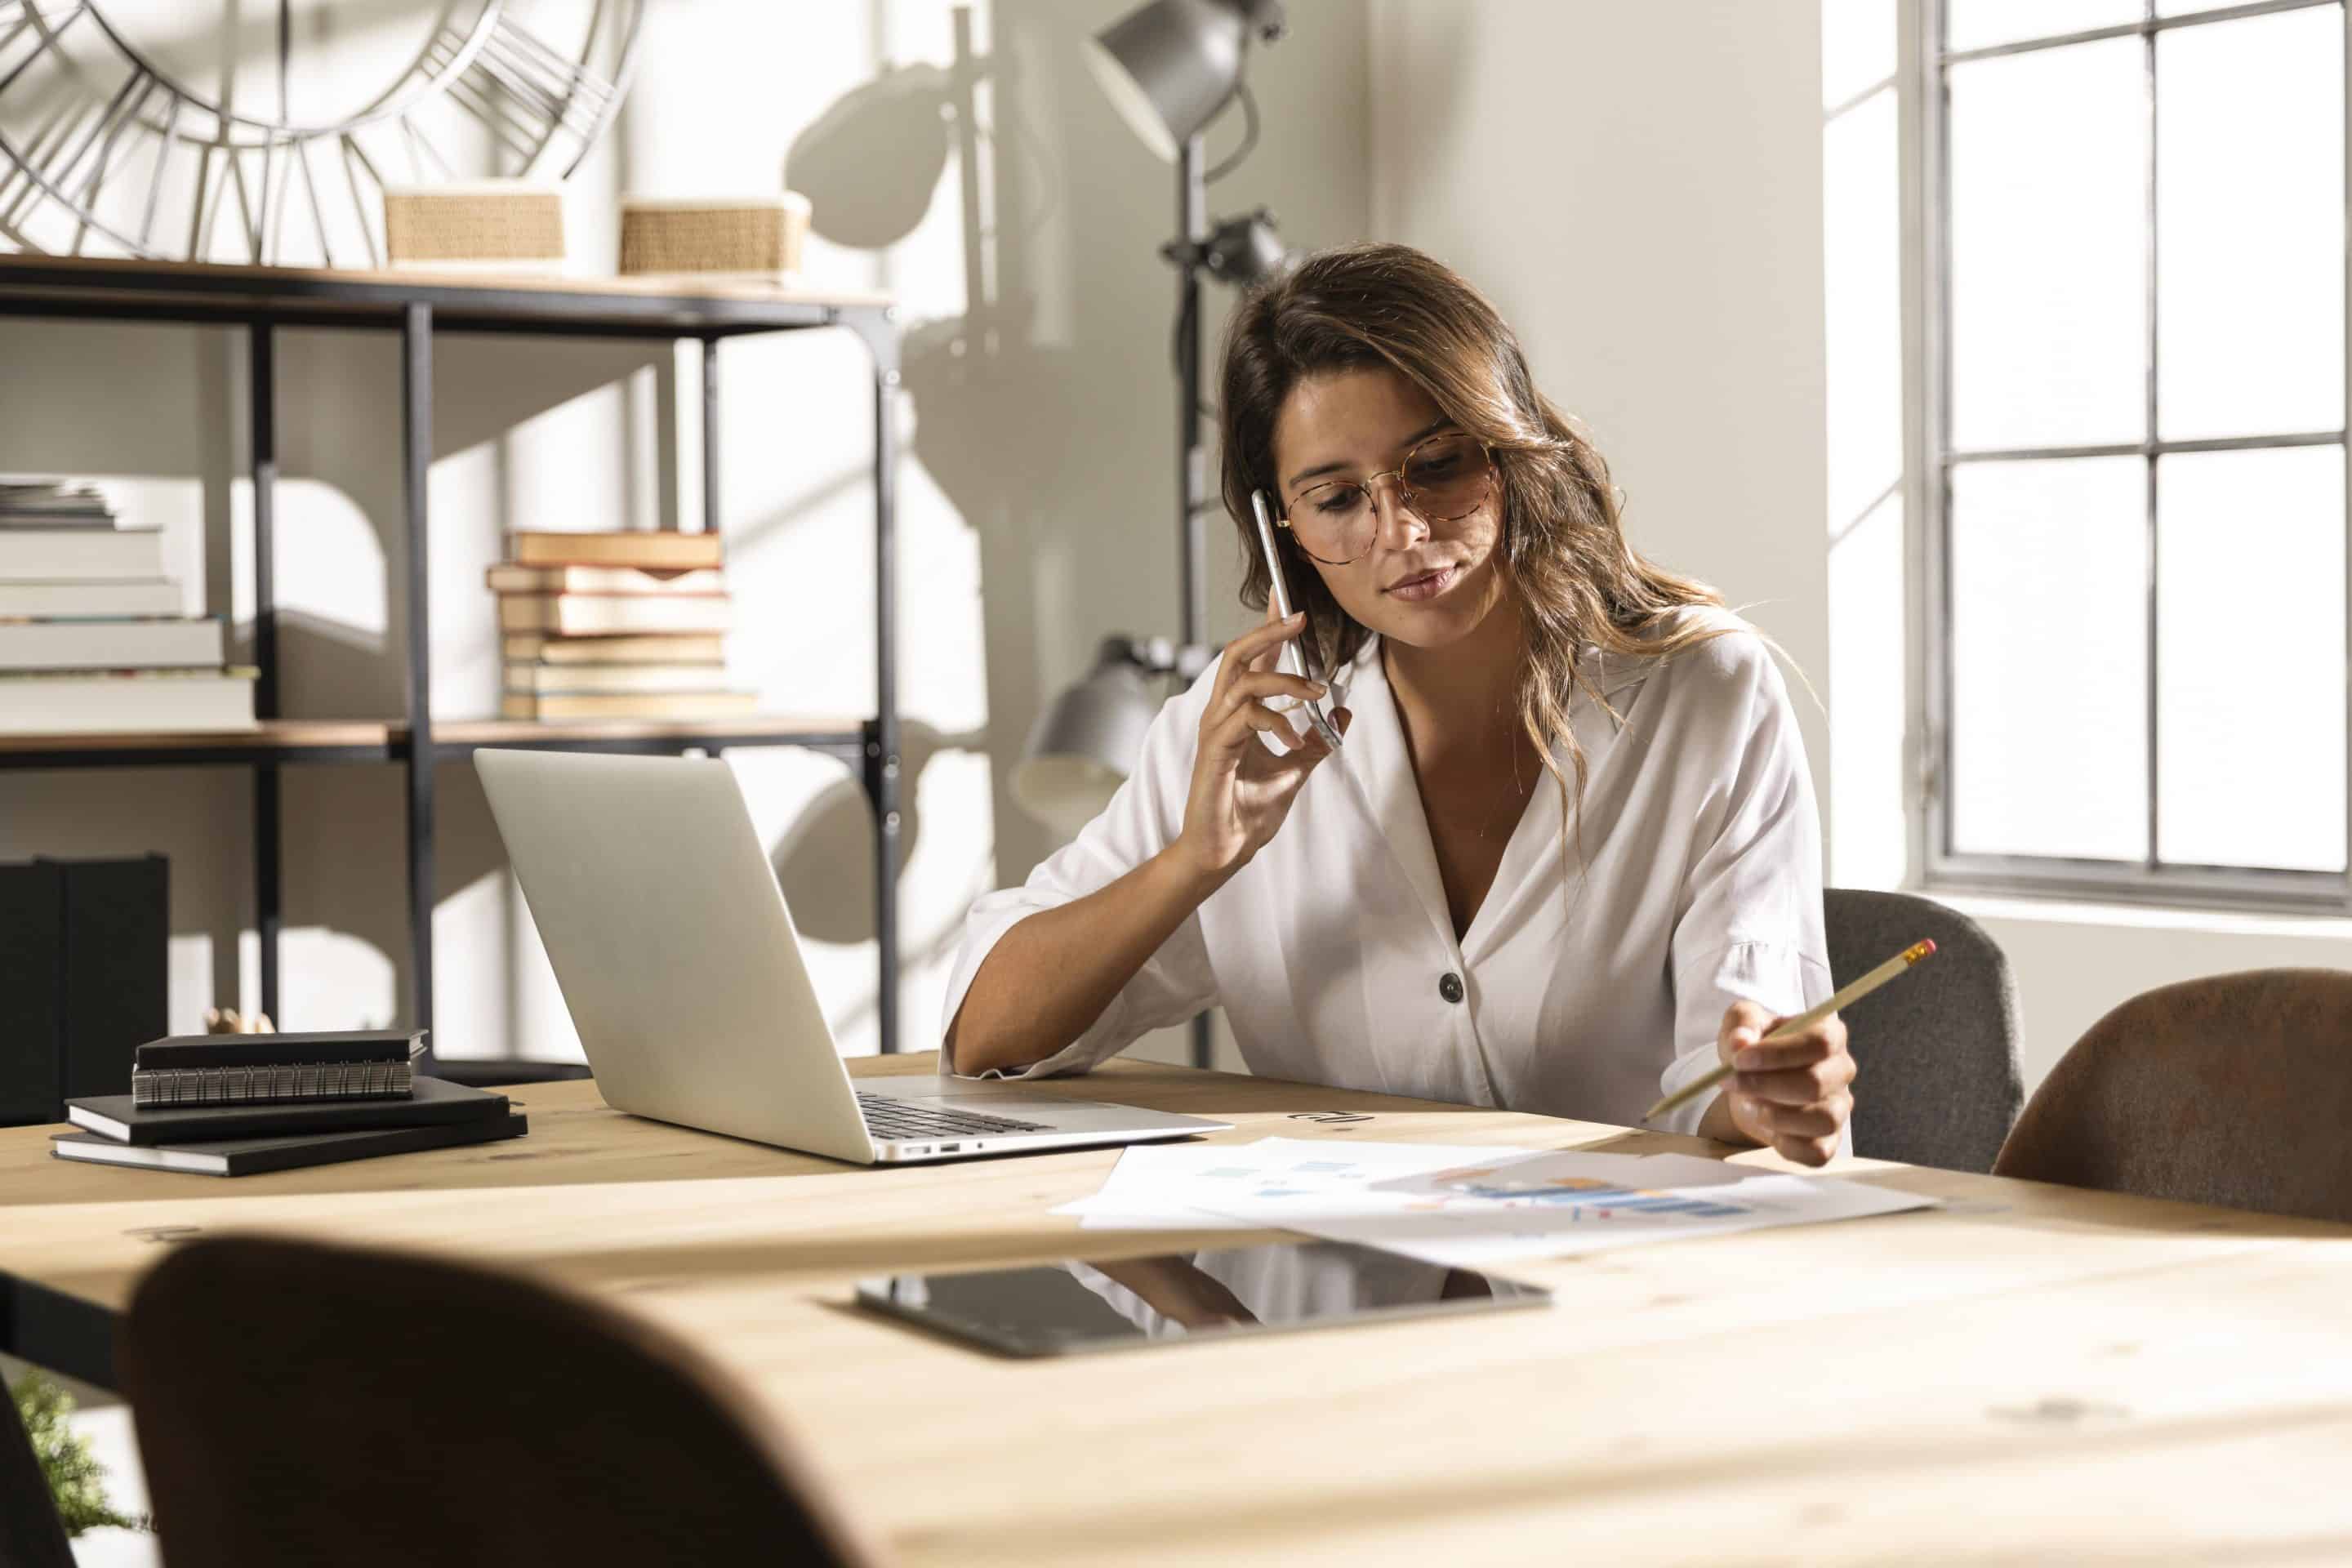 Mujer trabaja sentada delante de la mesa de ordenador en su casa. Lleva gafas y está hablando por teléfono mientras anota algo en una libreta. Imagen para ilustrar el artículo sobre los nuevos riesgos de las plataformas digitales.